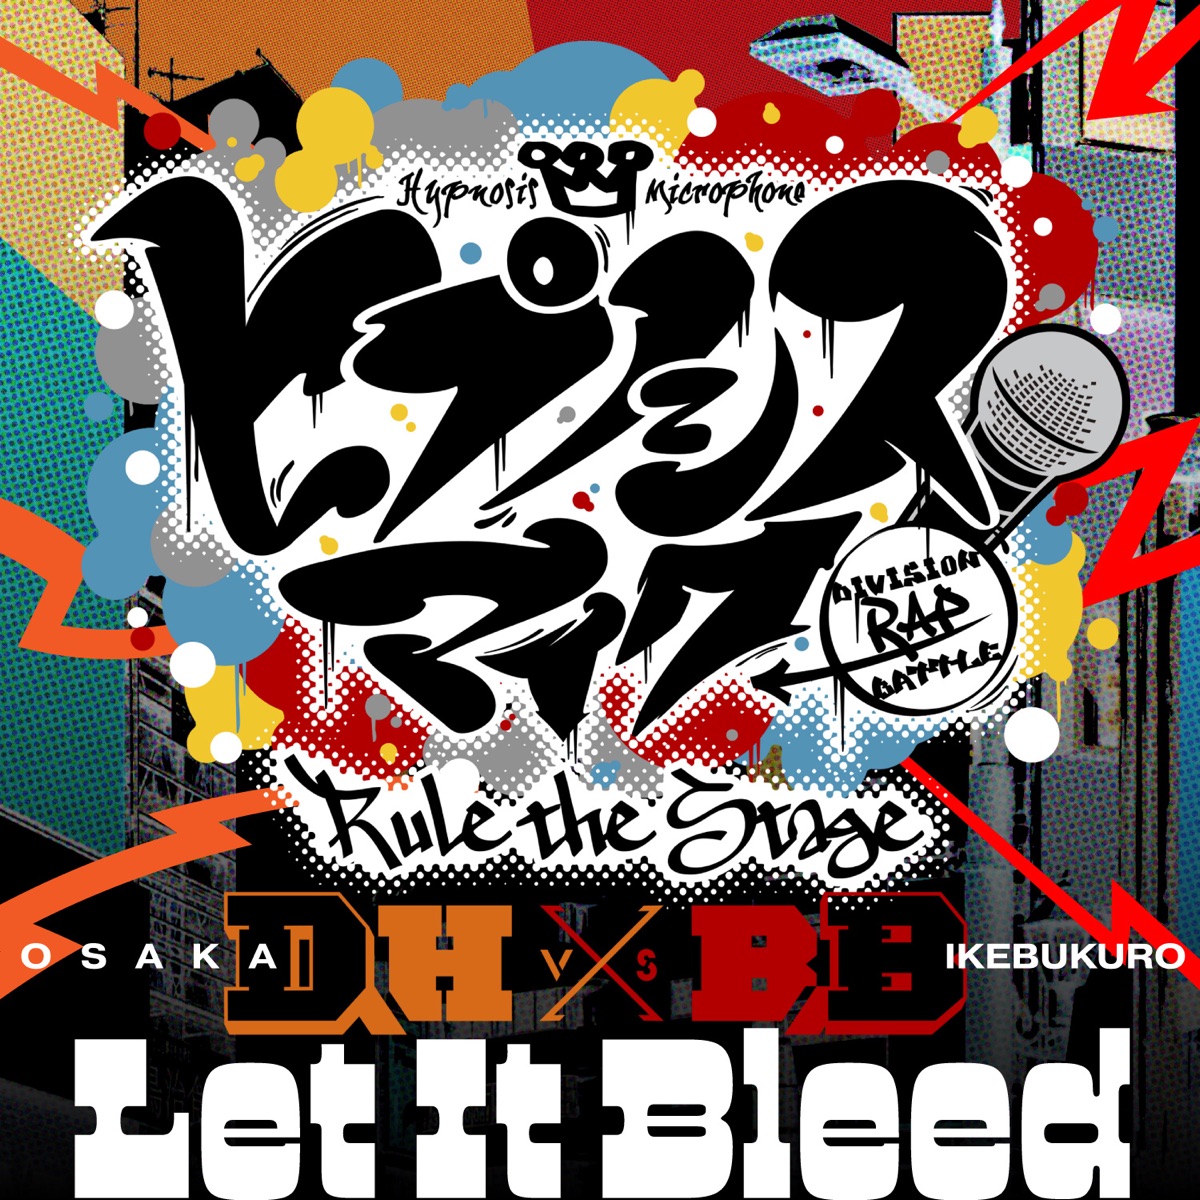 『ヒプノシスマイク -D.R.B- Rule the Stage (D.H VS B.B All Cast) - Let It Bleed 歌詞』収録の『Let It Bleed』ジャケット